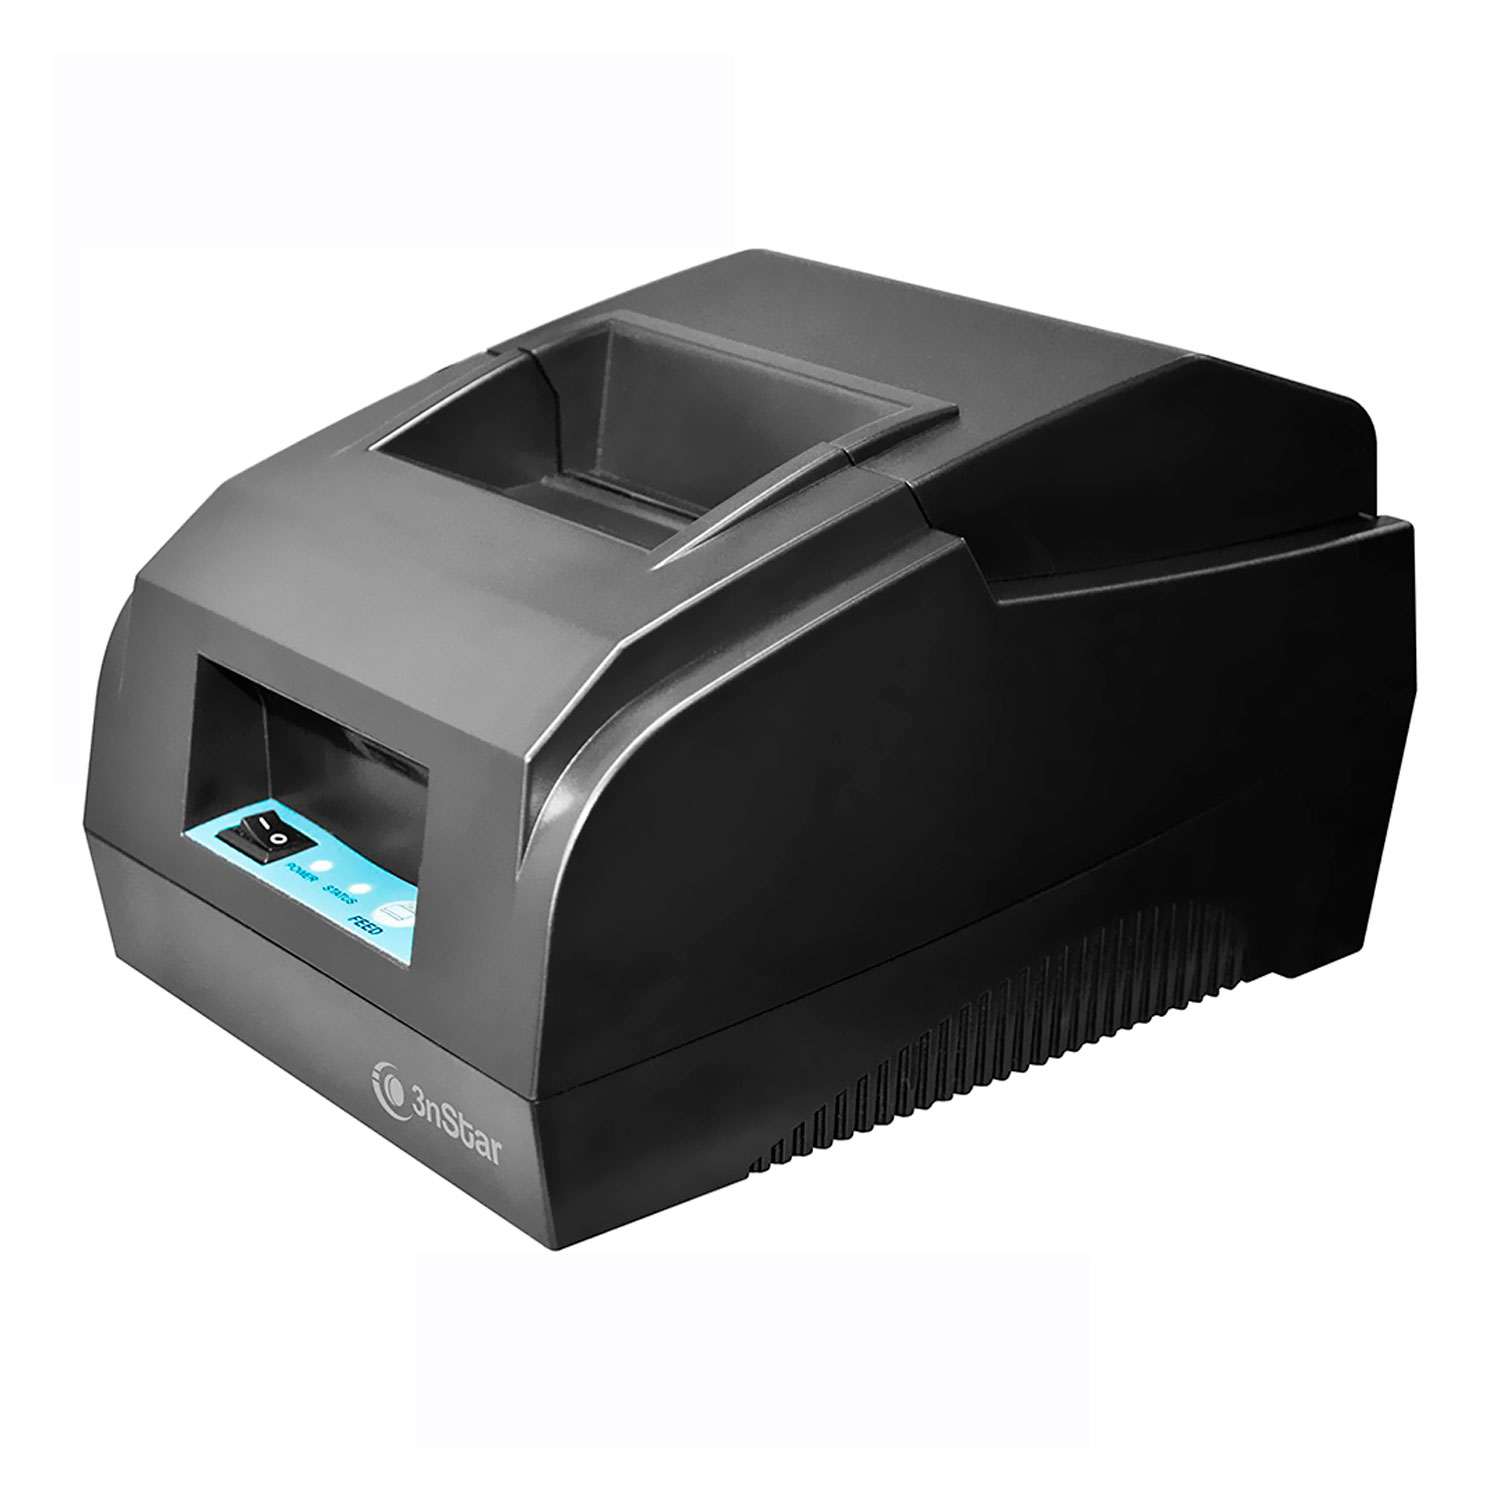 Impressora Térmica 3nStar RPT001 Bivolt - Preto